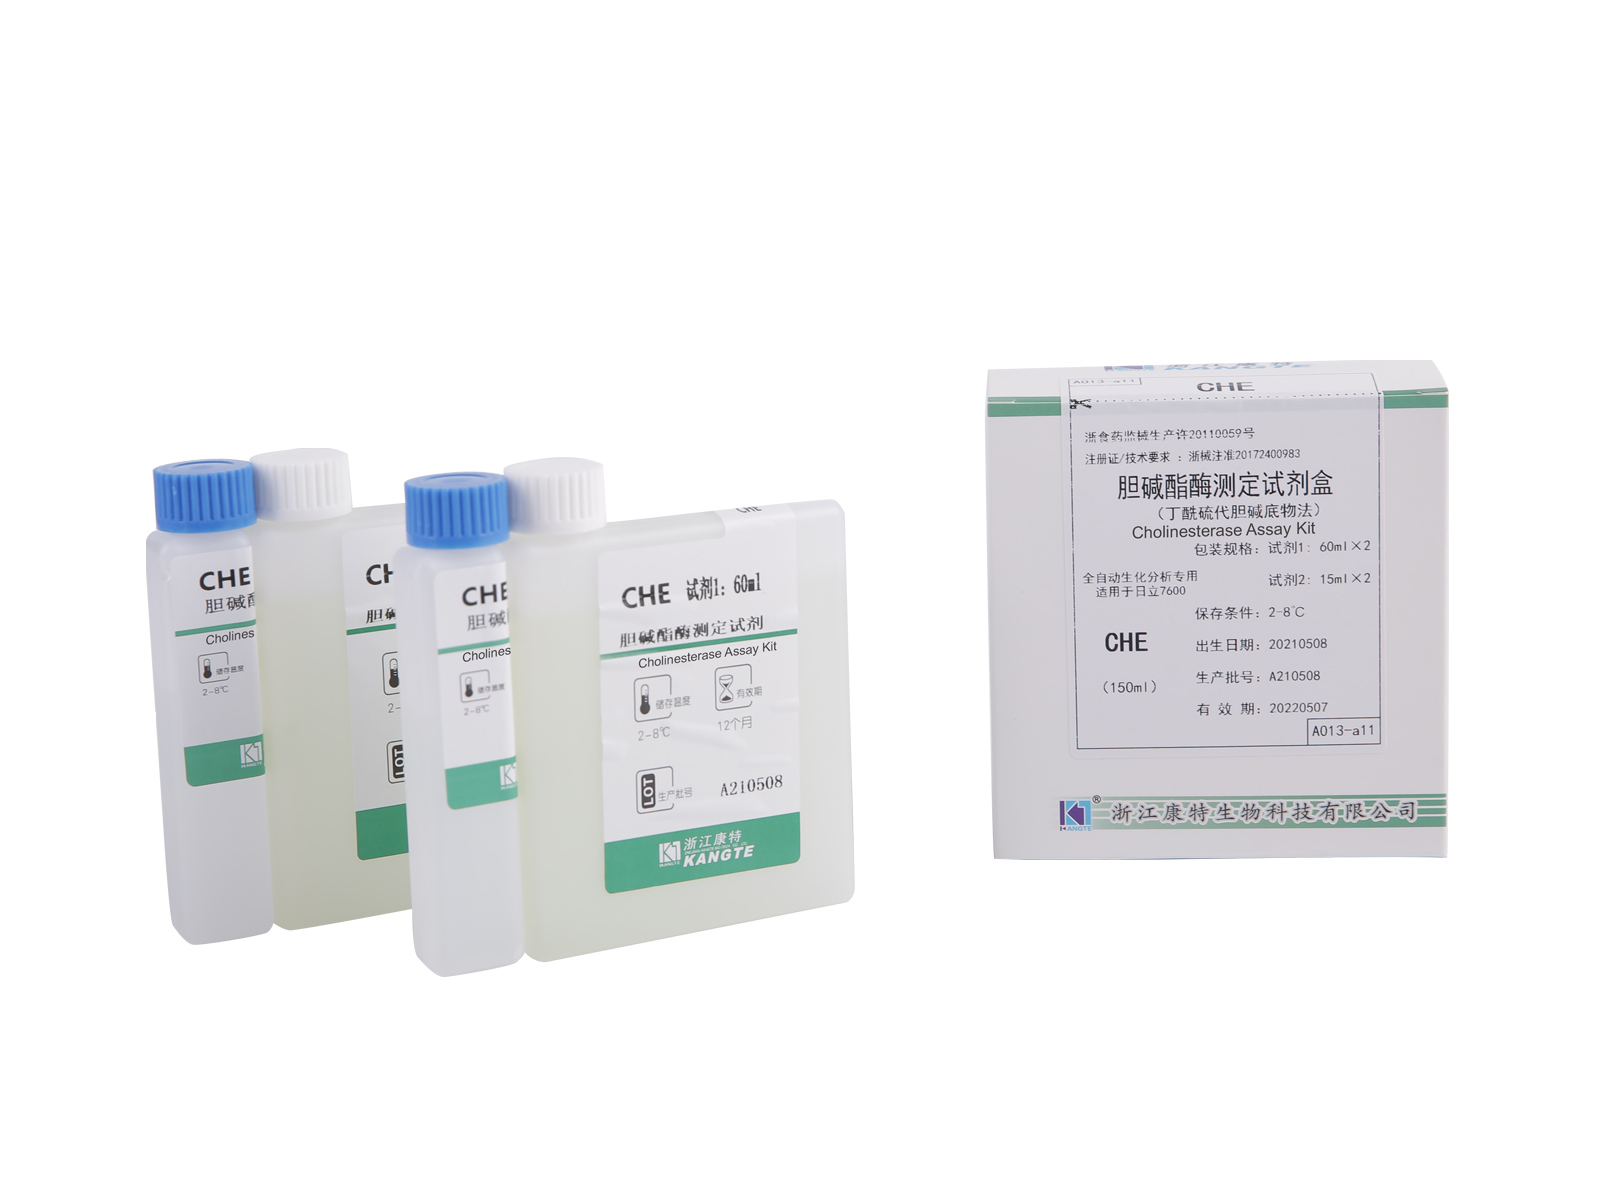 【CHE】Kit de ensaio de colinesterase (método de substrato de butiriltiocolina)